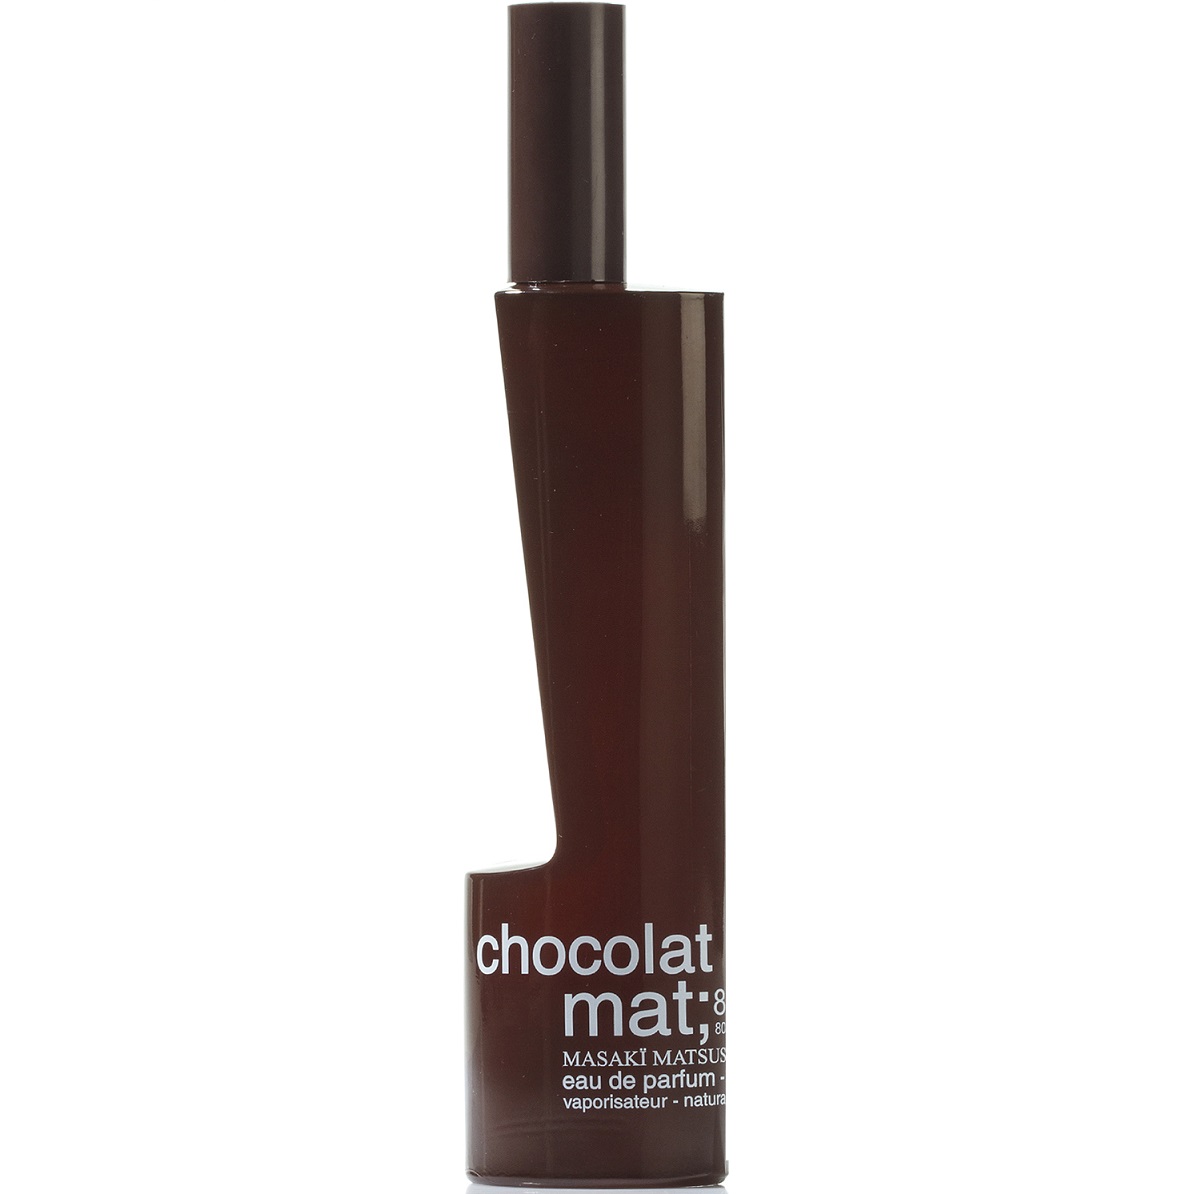 Masaki Matsushima - mat chocolat (2мл)